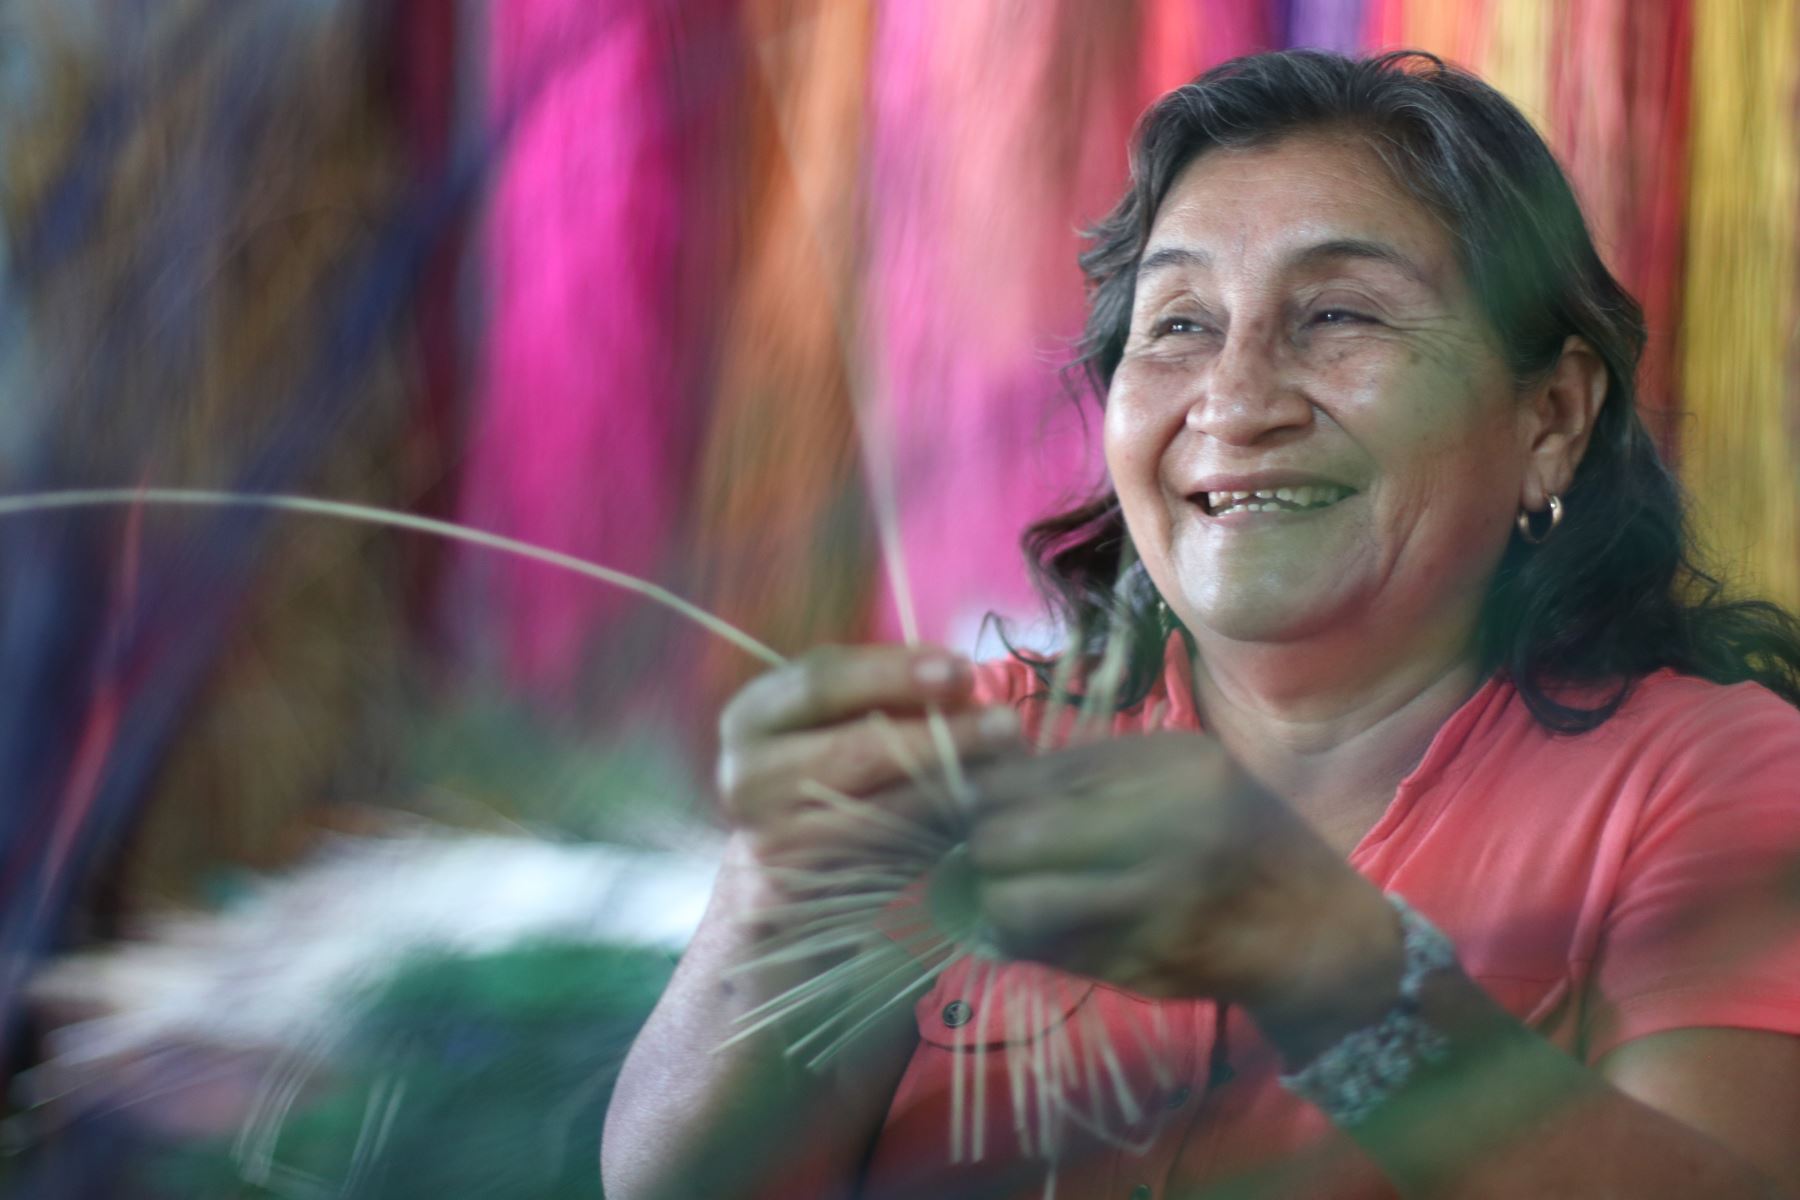 Más de 300 artesanas de Catacaos (Piura) lograron recuperar sus negocios tras el Fenómeno El Niño Costero del 2017.